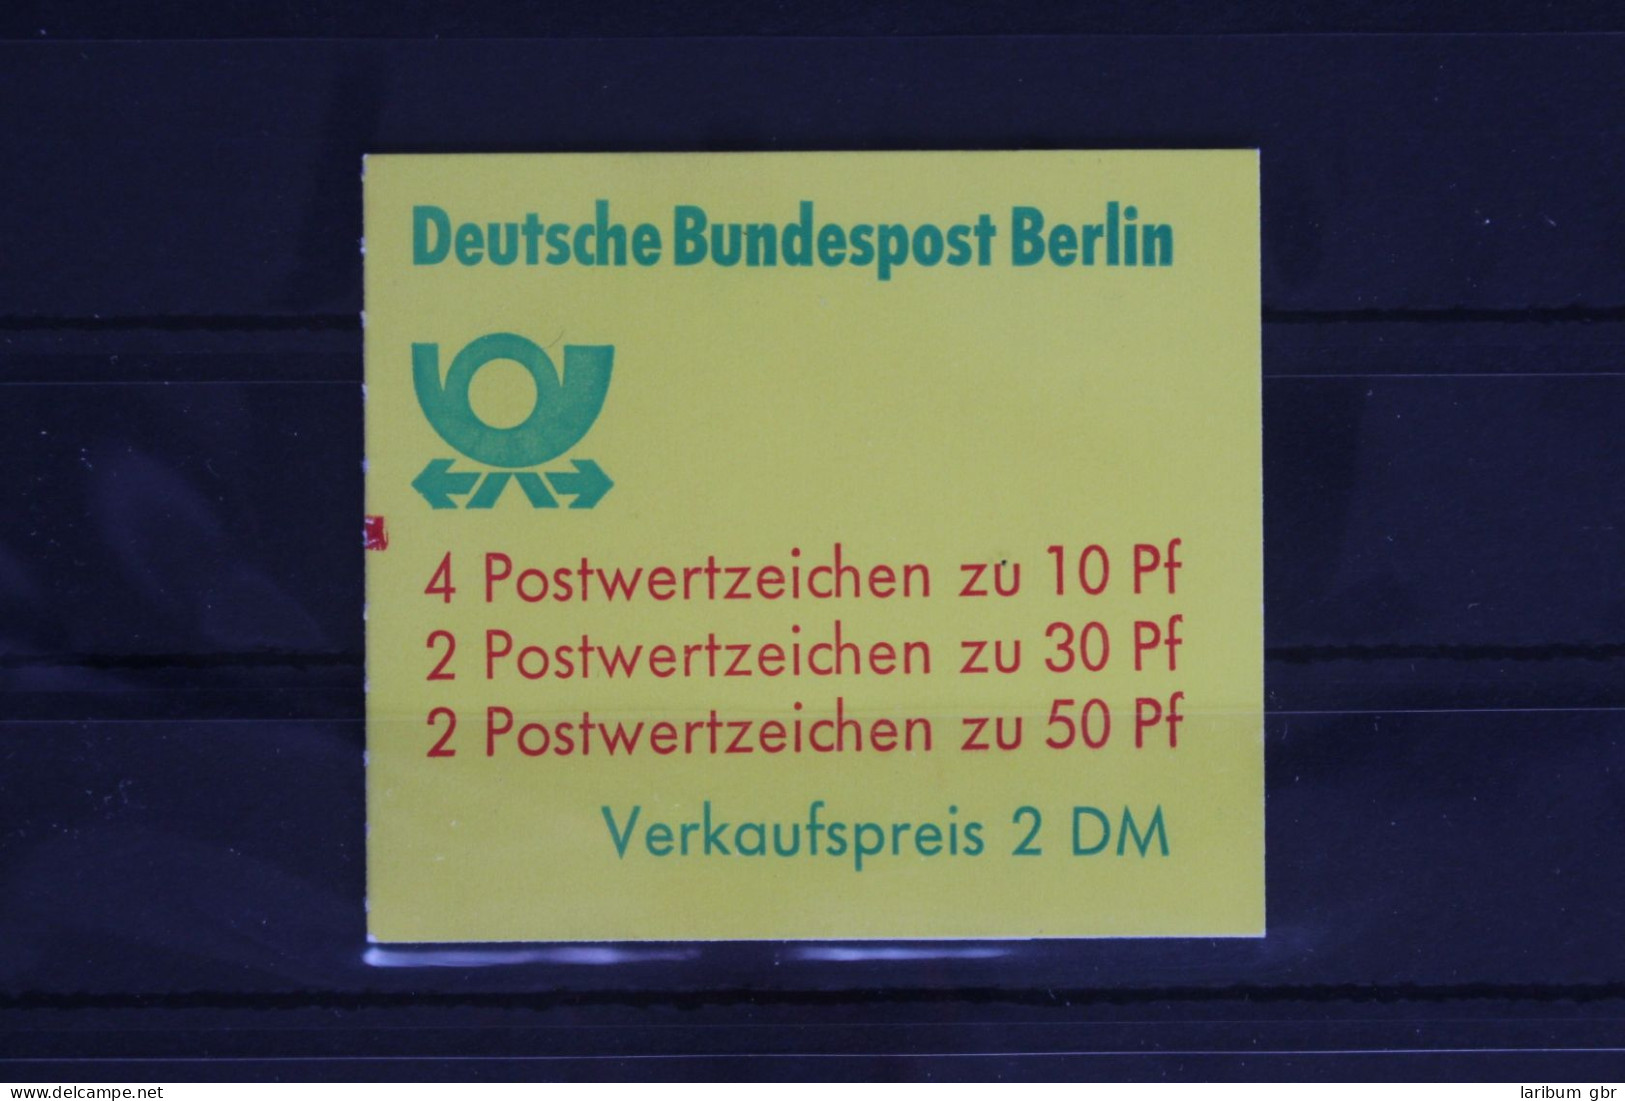 Berlin MH 10 B A MZ Postfrisch Markenheftchen #FY324 - Booklets